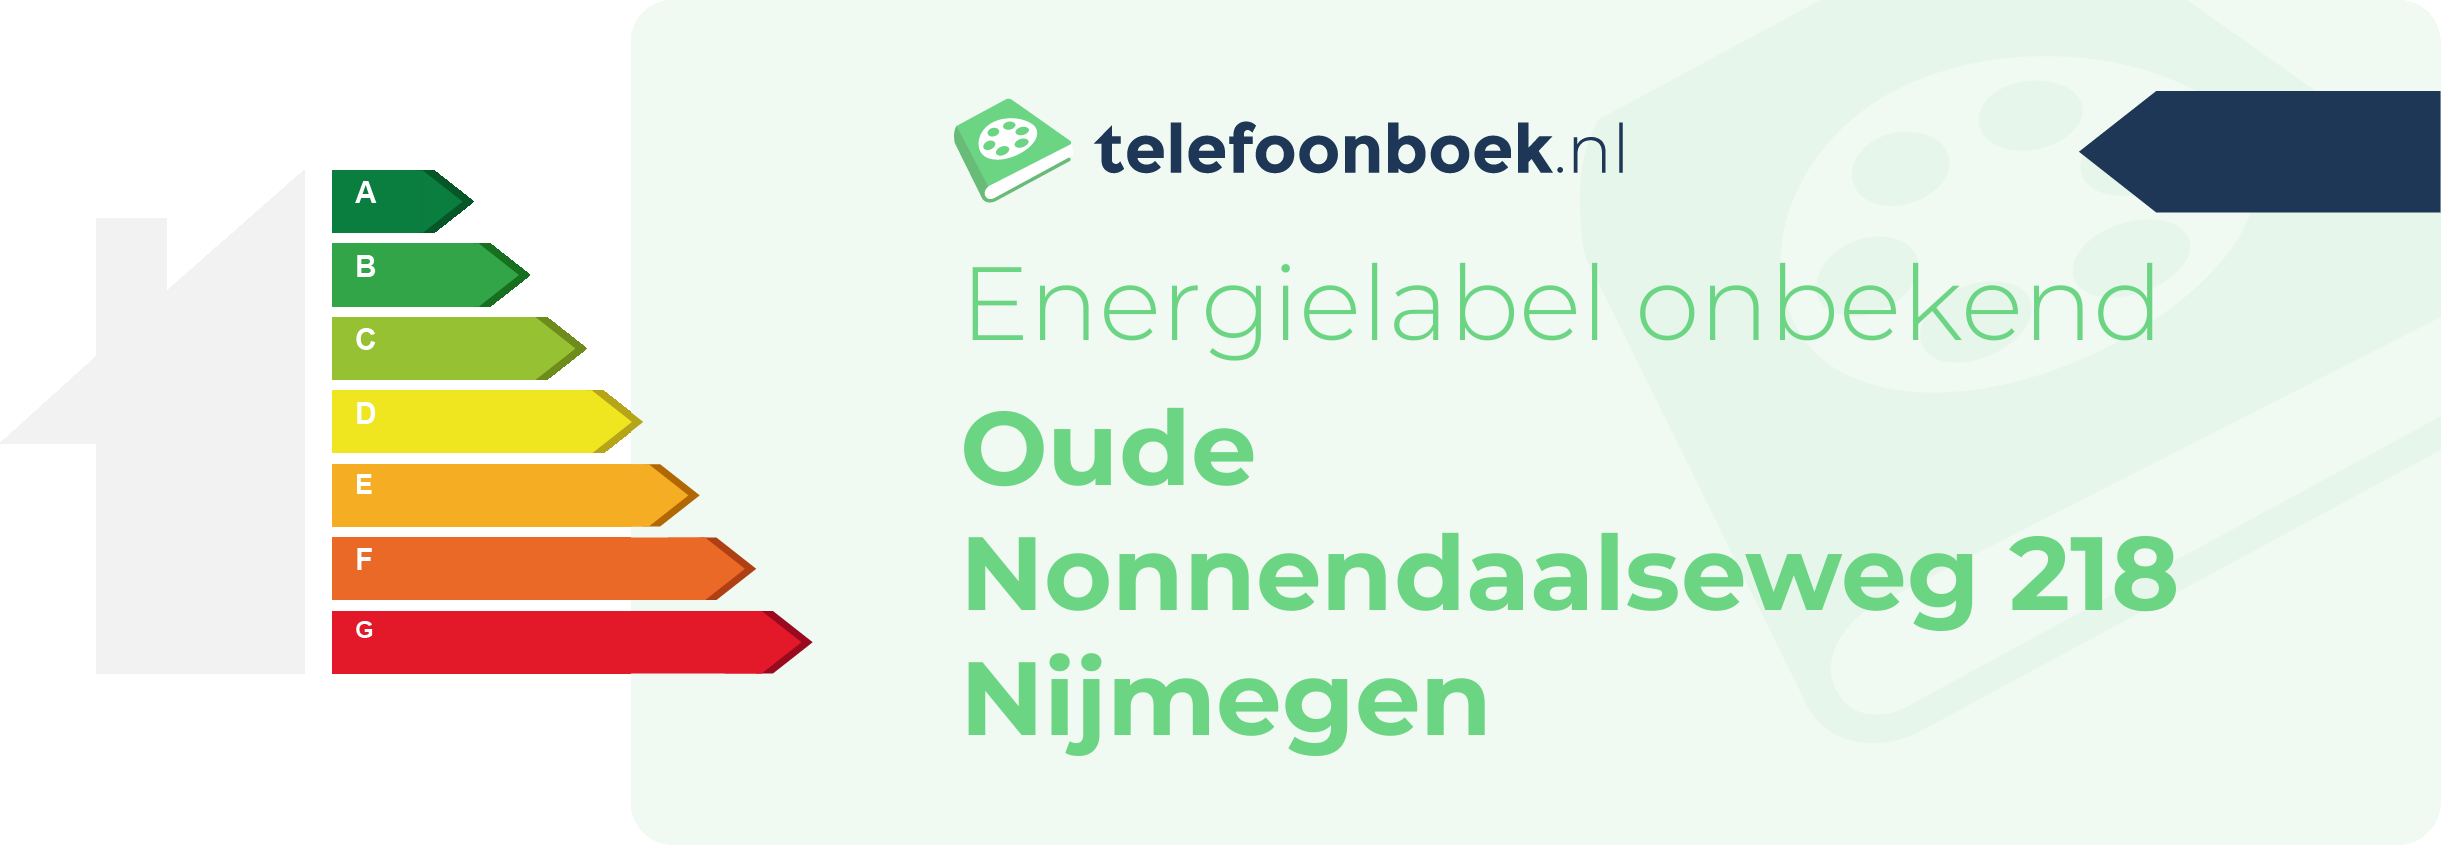 Energielabel Oude Nonnendaalseweg 218 Nijmegen